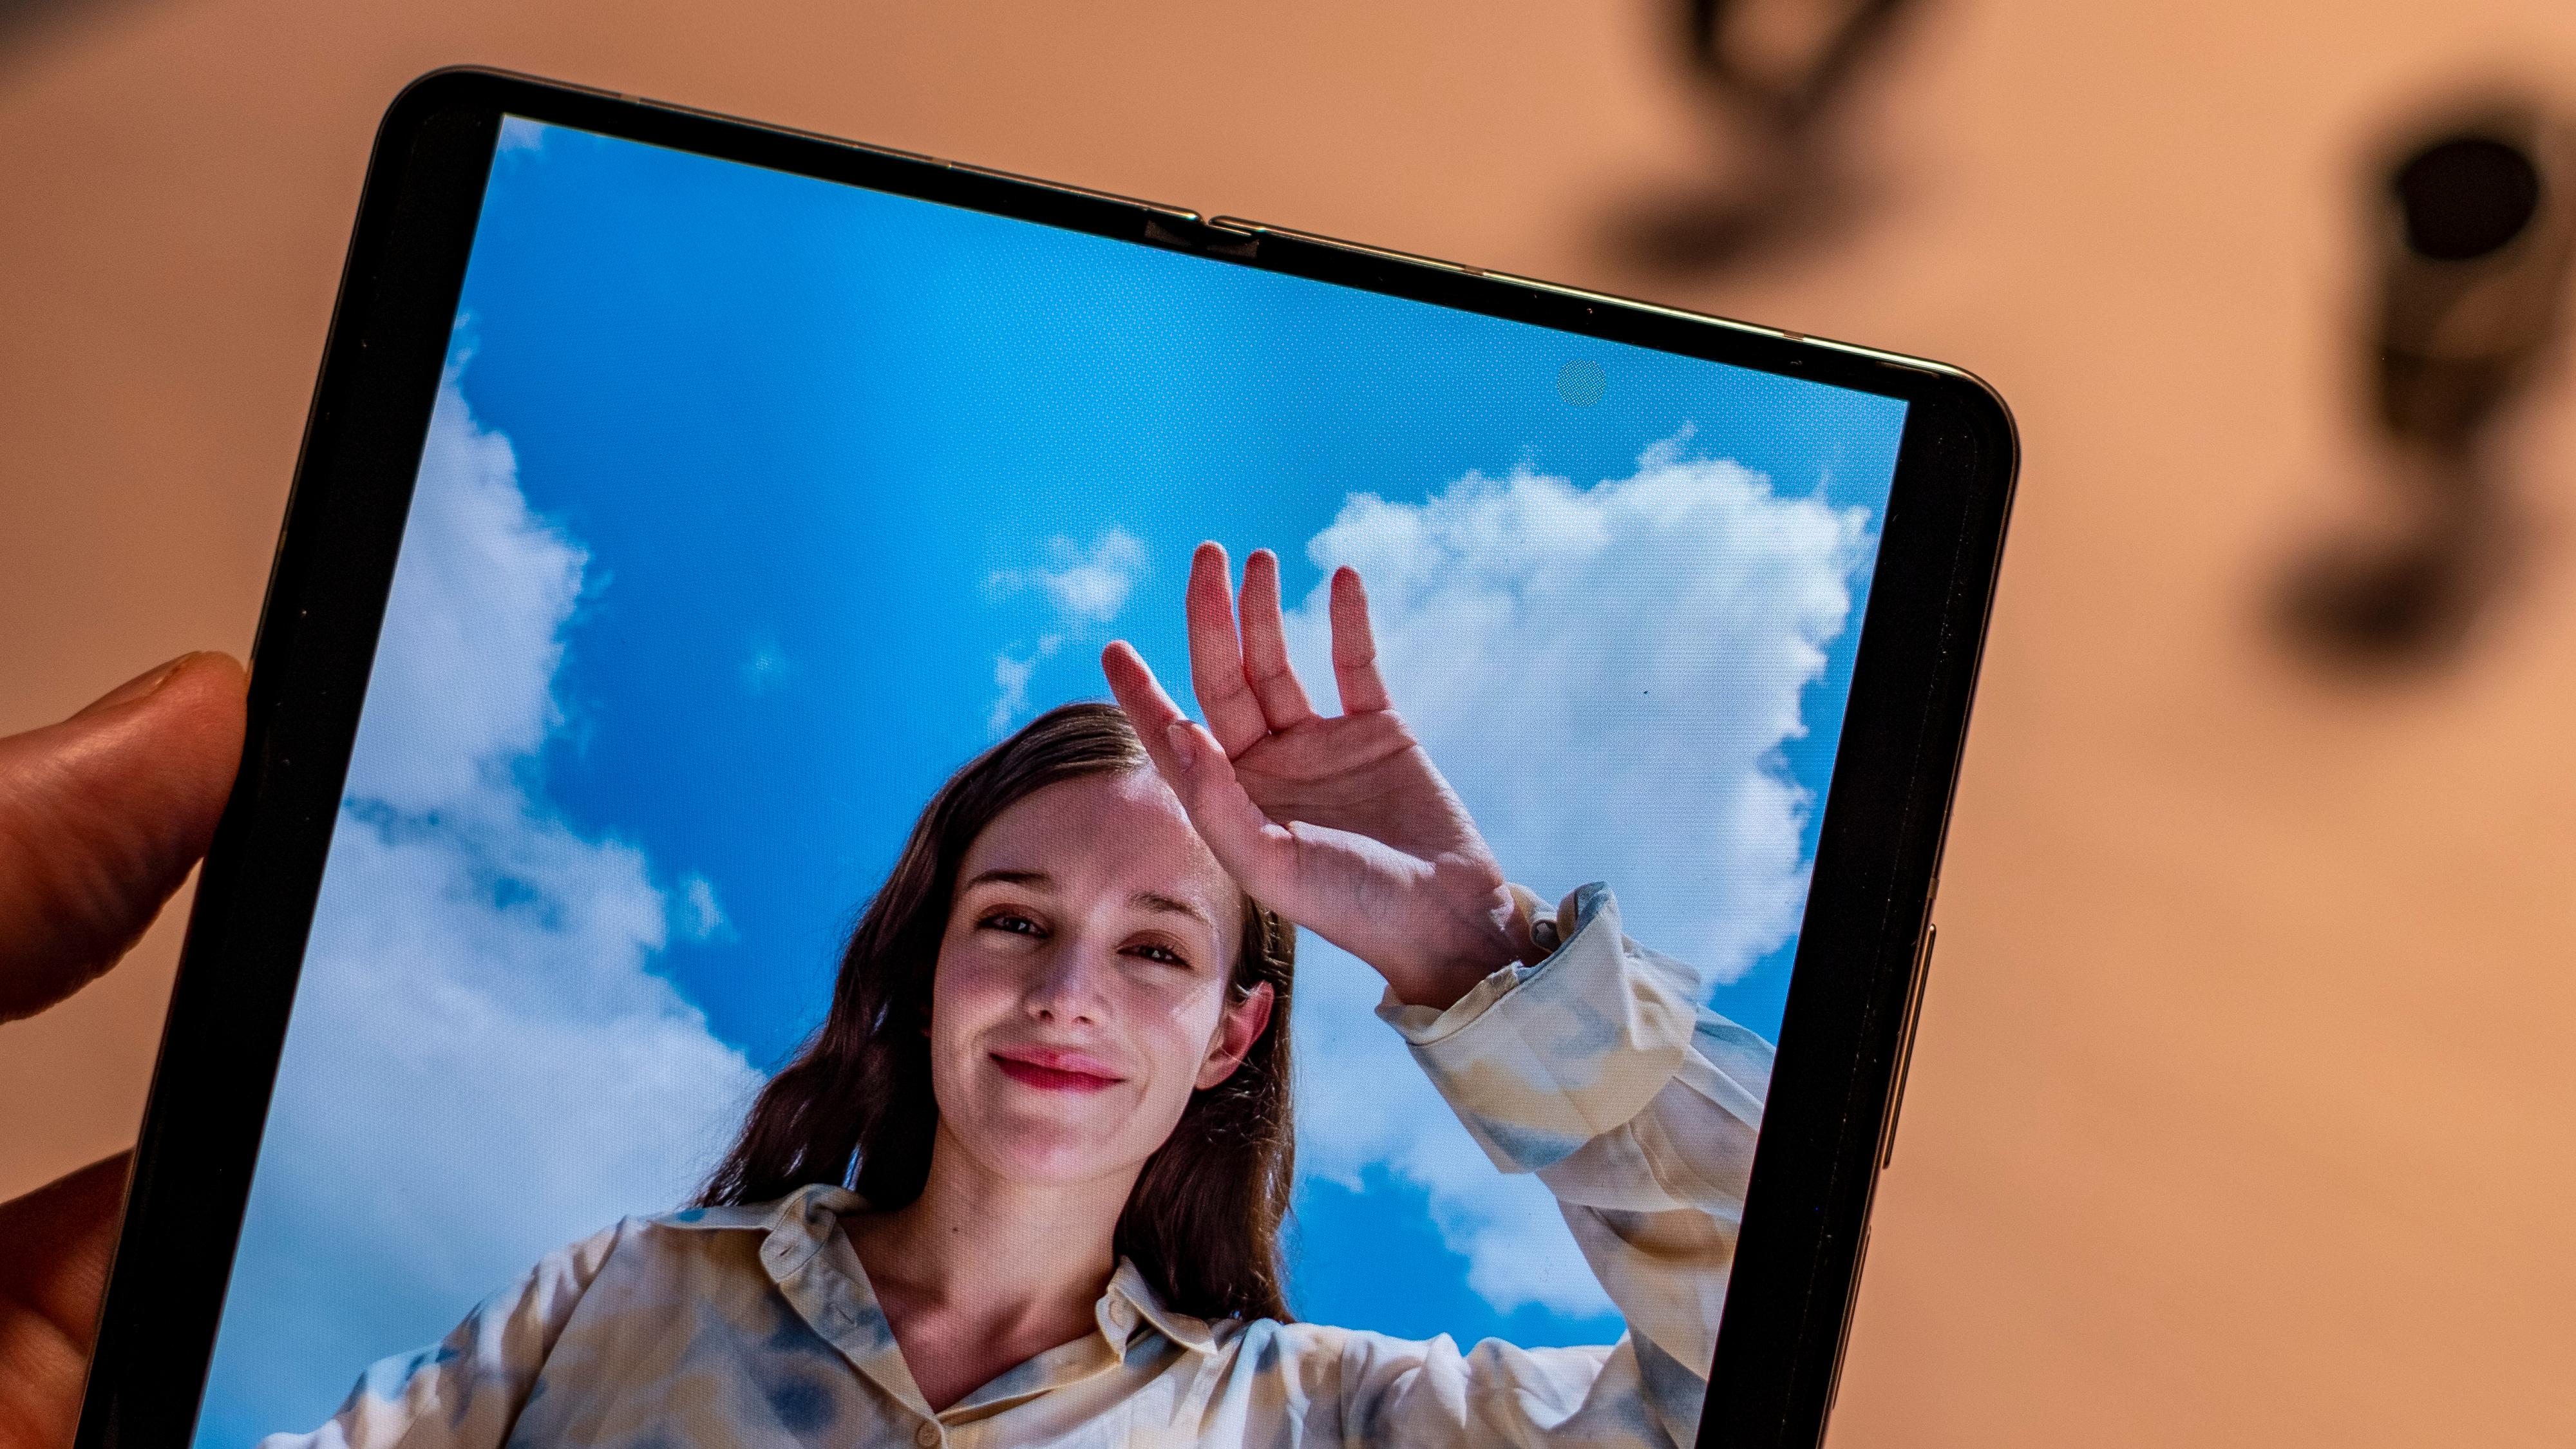 Pikslene over selfiekameraet på innsiden av telefonen skiller seg fortsatt ut fra omgivelsene, men de skal ifølge Samsung ha blitt noe mindre synlige enn før.